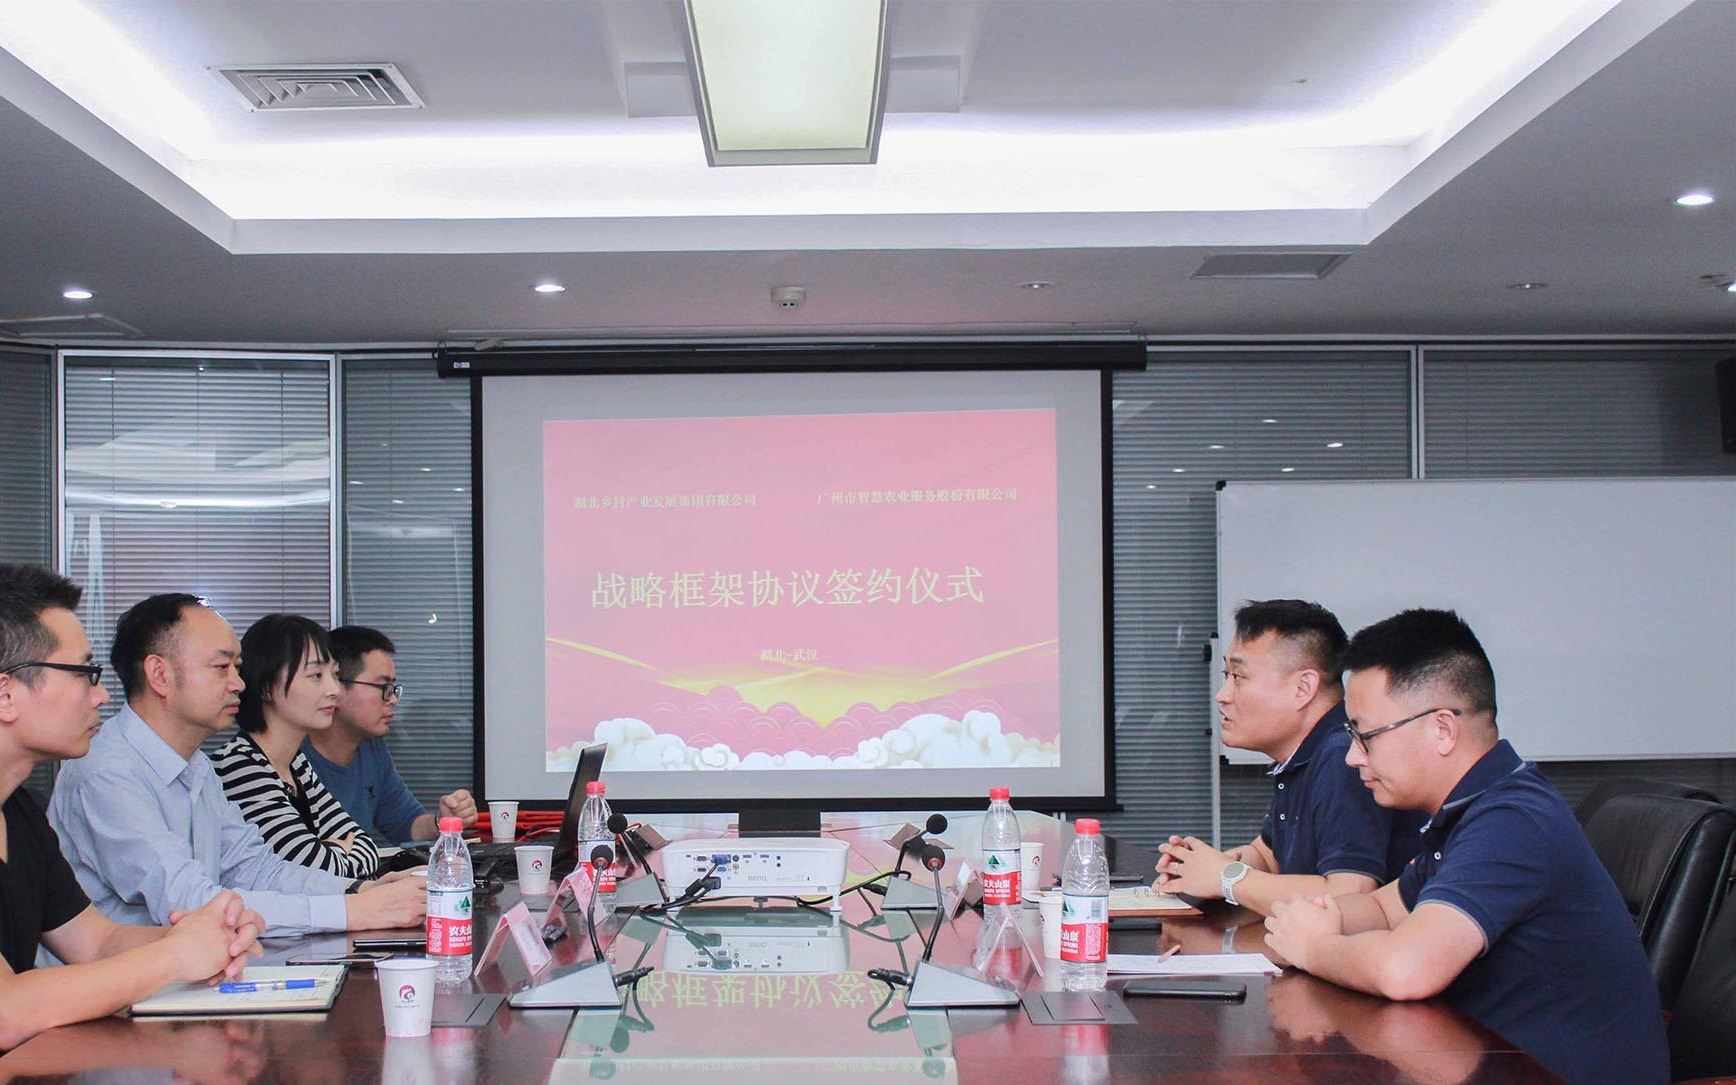 91麻将官方下载与湖北乡村产业集团签署战略合作框架协议